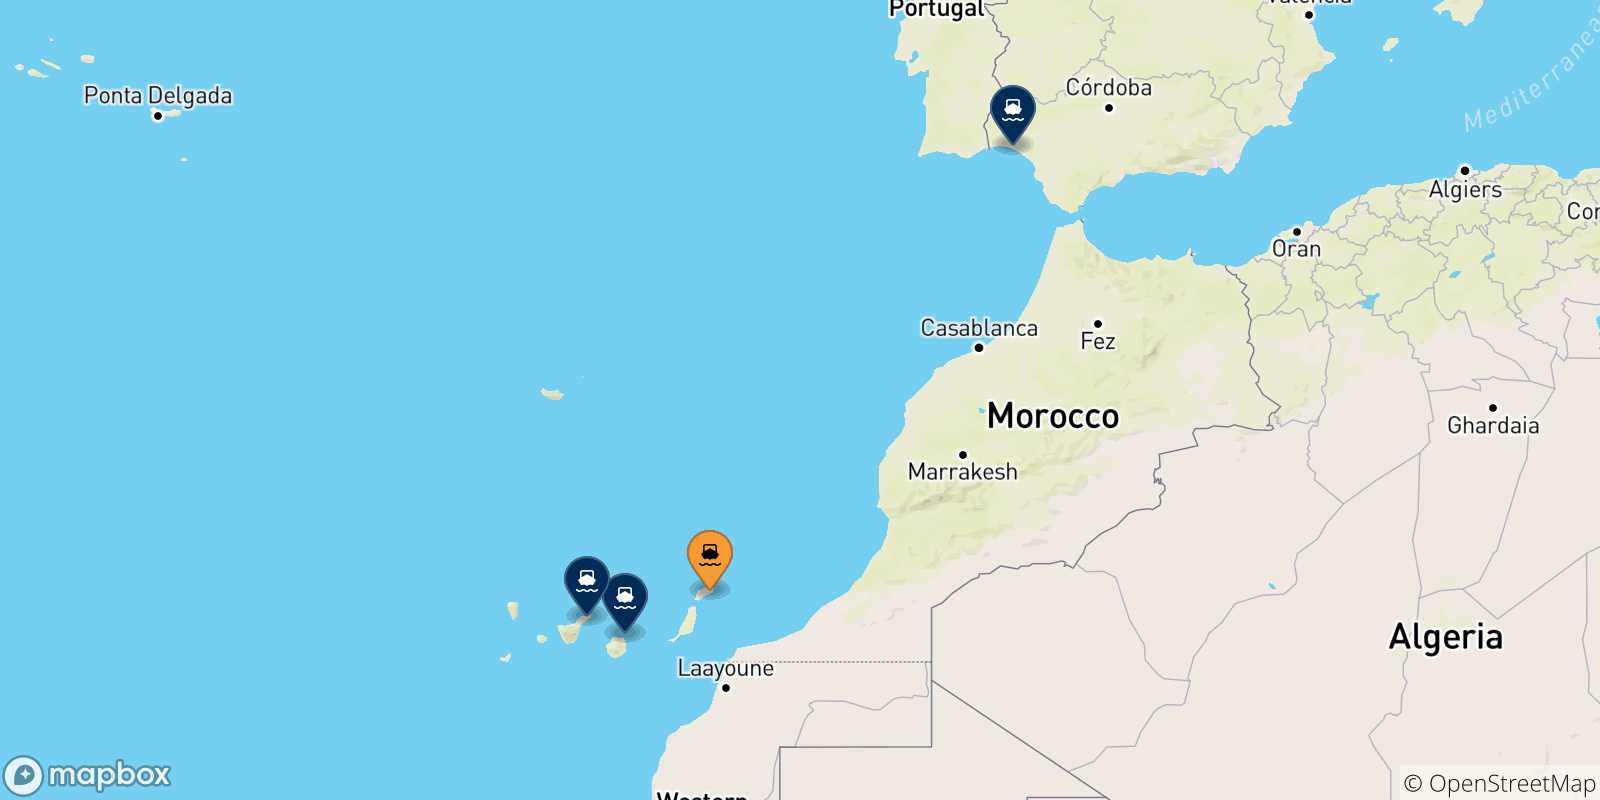 Mappa delle possibili rotte tra Arrecife (Lanzarote) e la Spagna